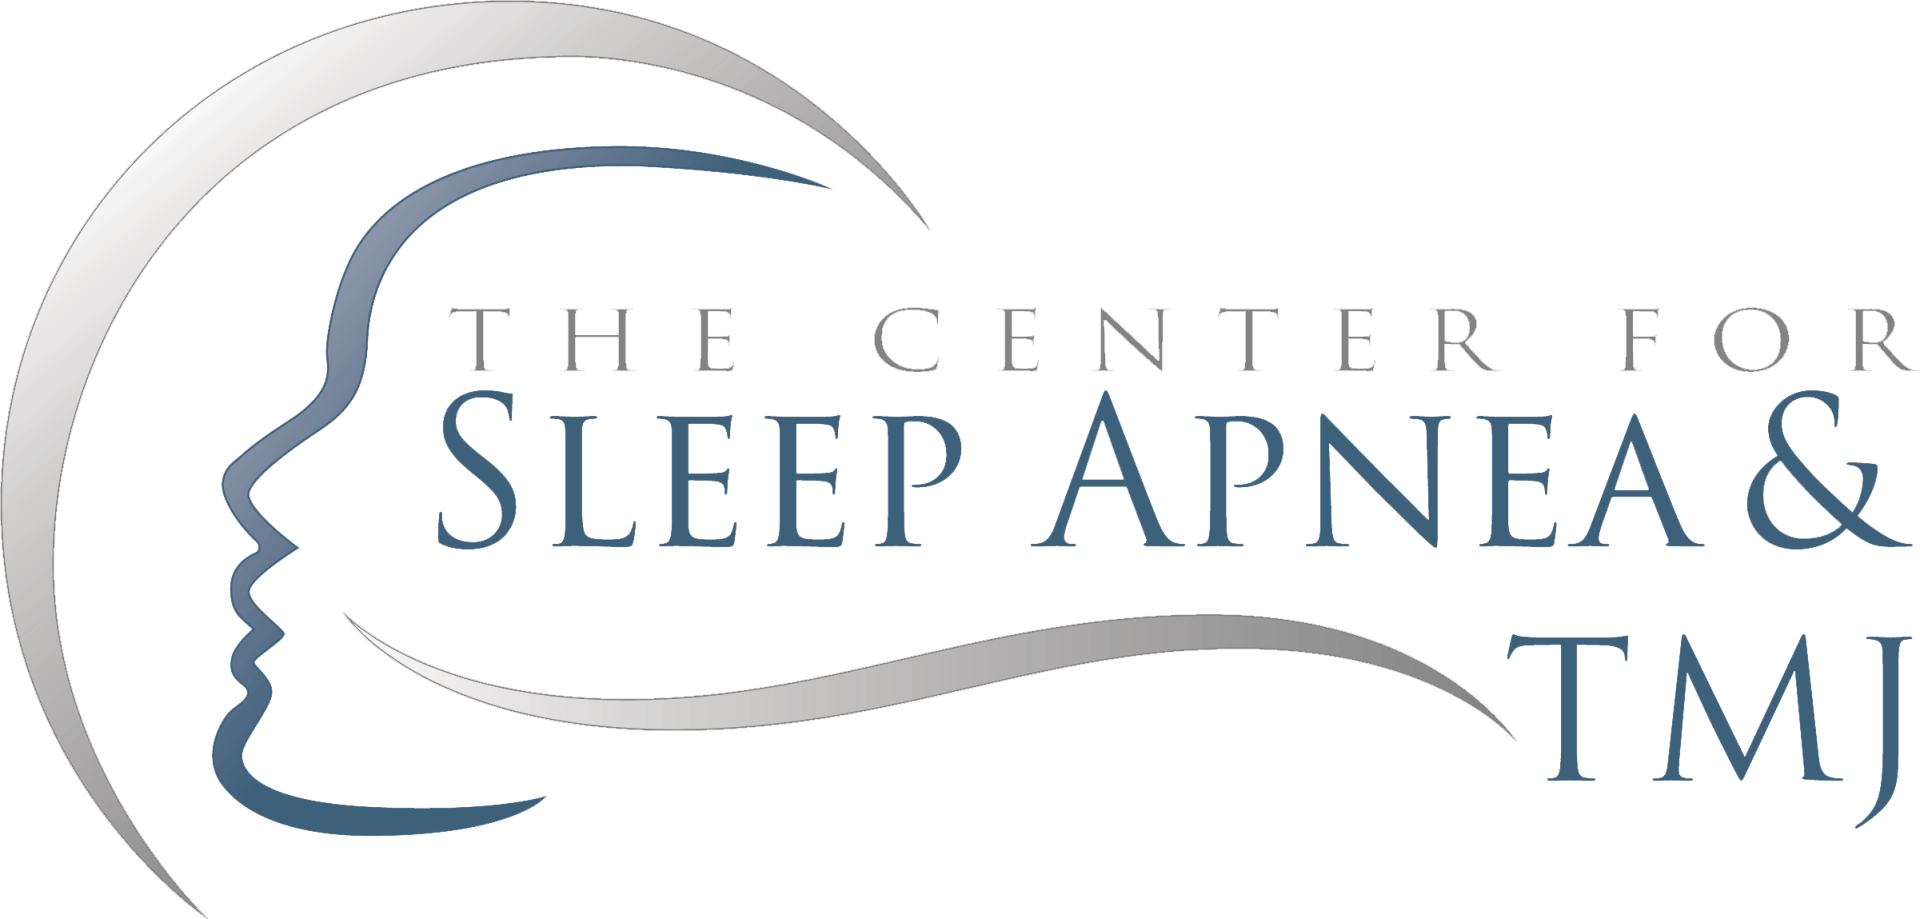 The Center for Sleep Apnea and TMJ Logo - 2